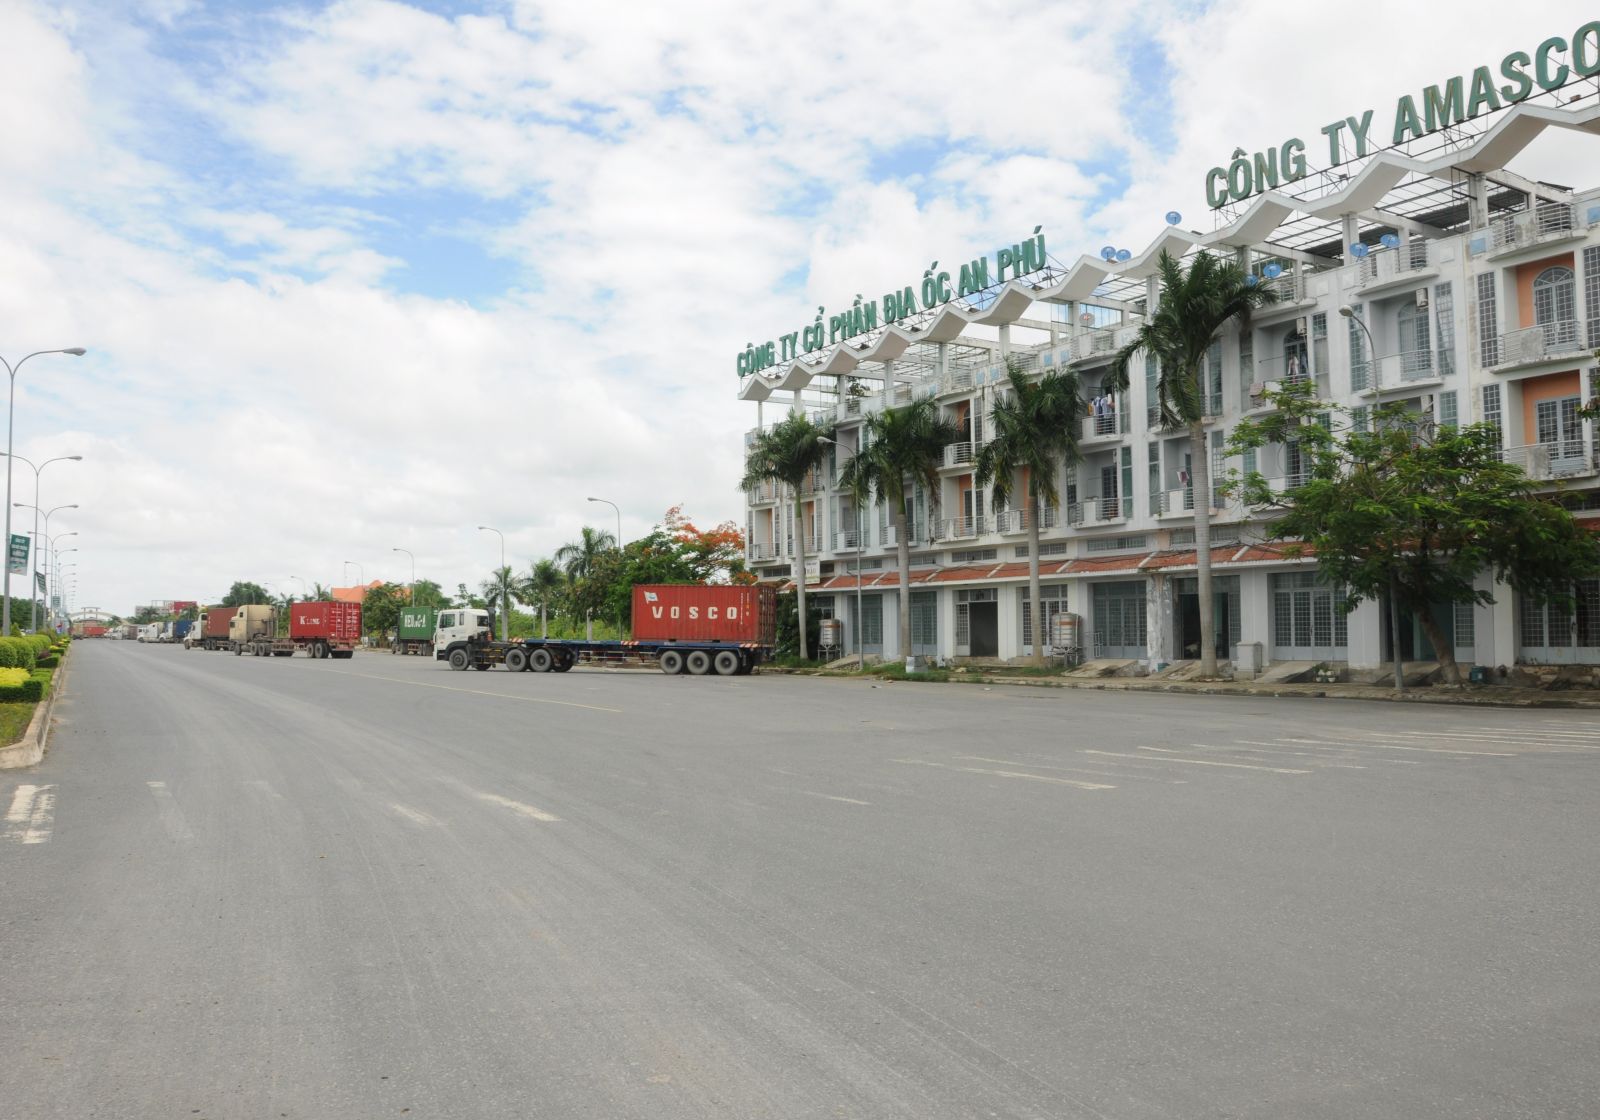 Điểm báo in Tây Ninh ngày 11.7.2018